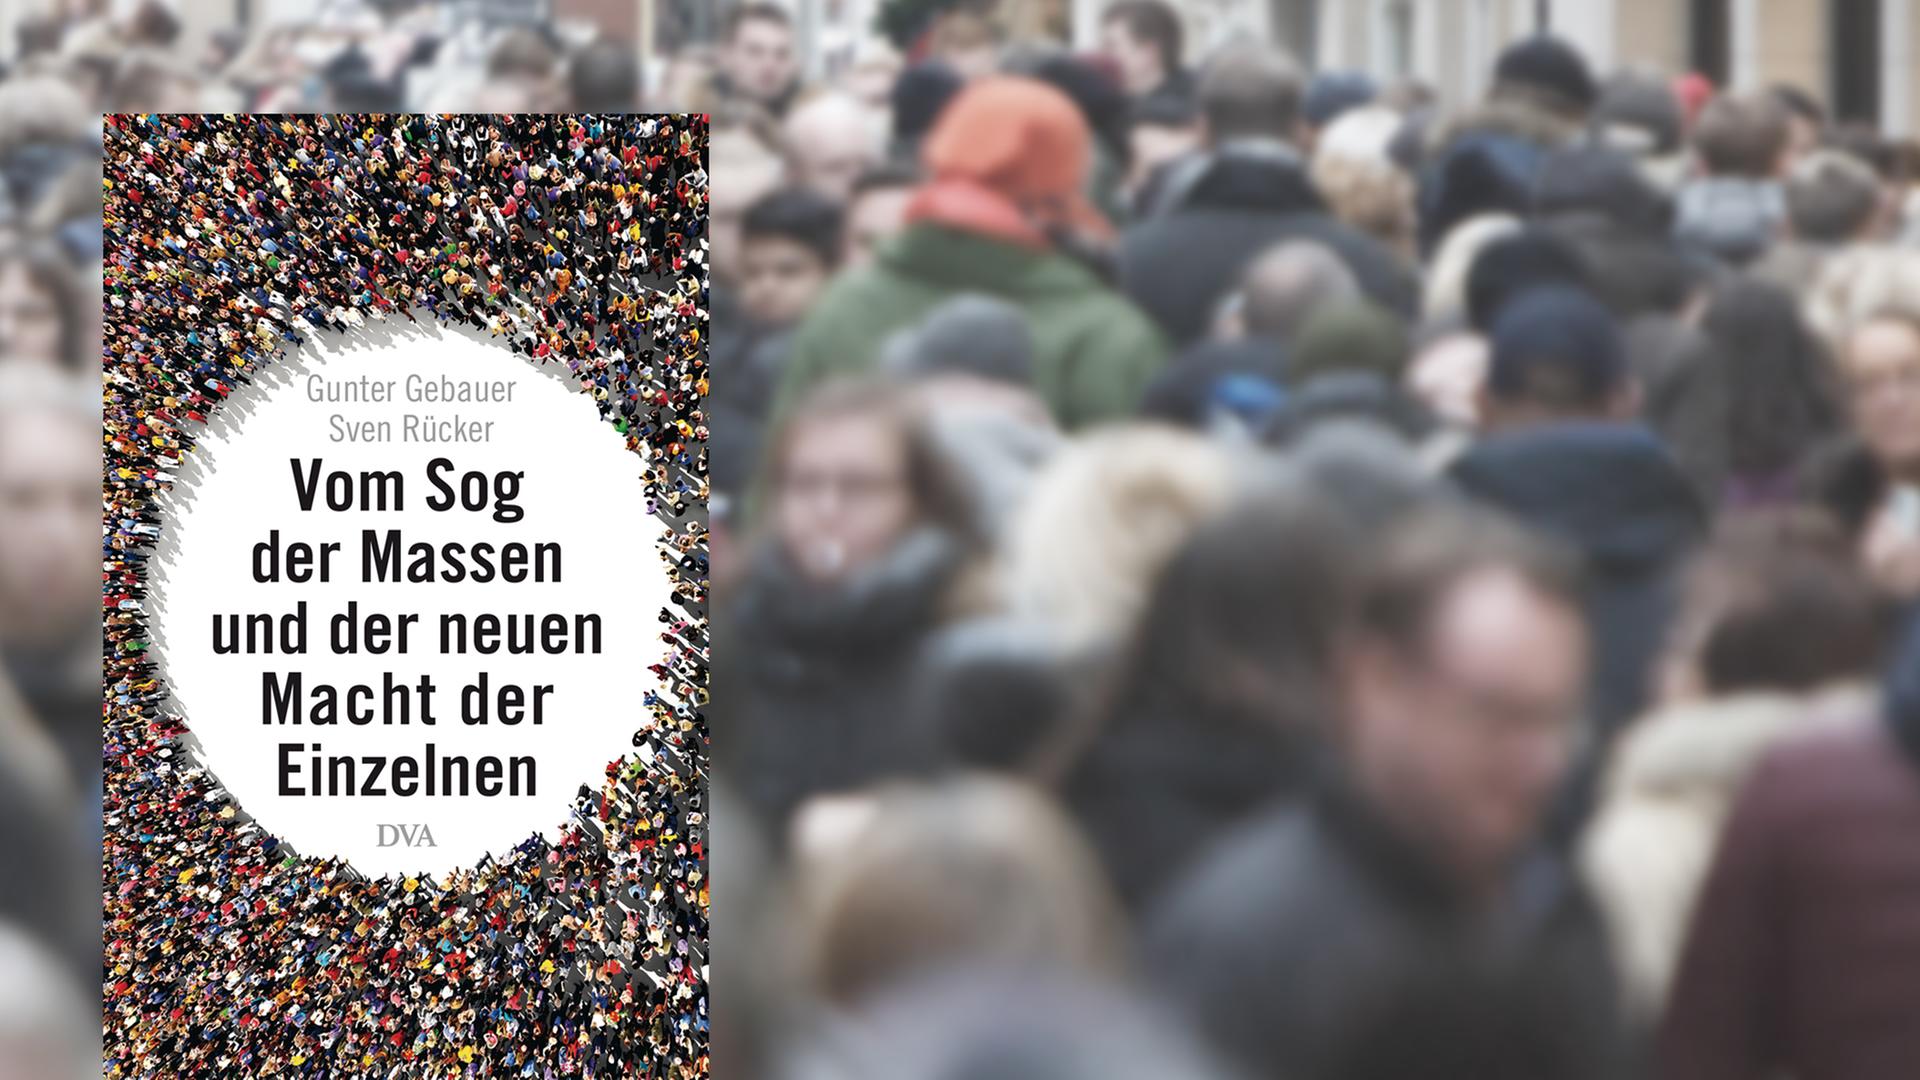 Eine Montage zeigt das Buchcover "Vom Sog der Massen und der neuen Macht der Einzelnen", im Hintergrund Menschen in einer Fußgängerzone